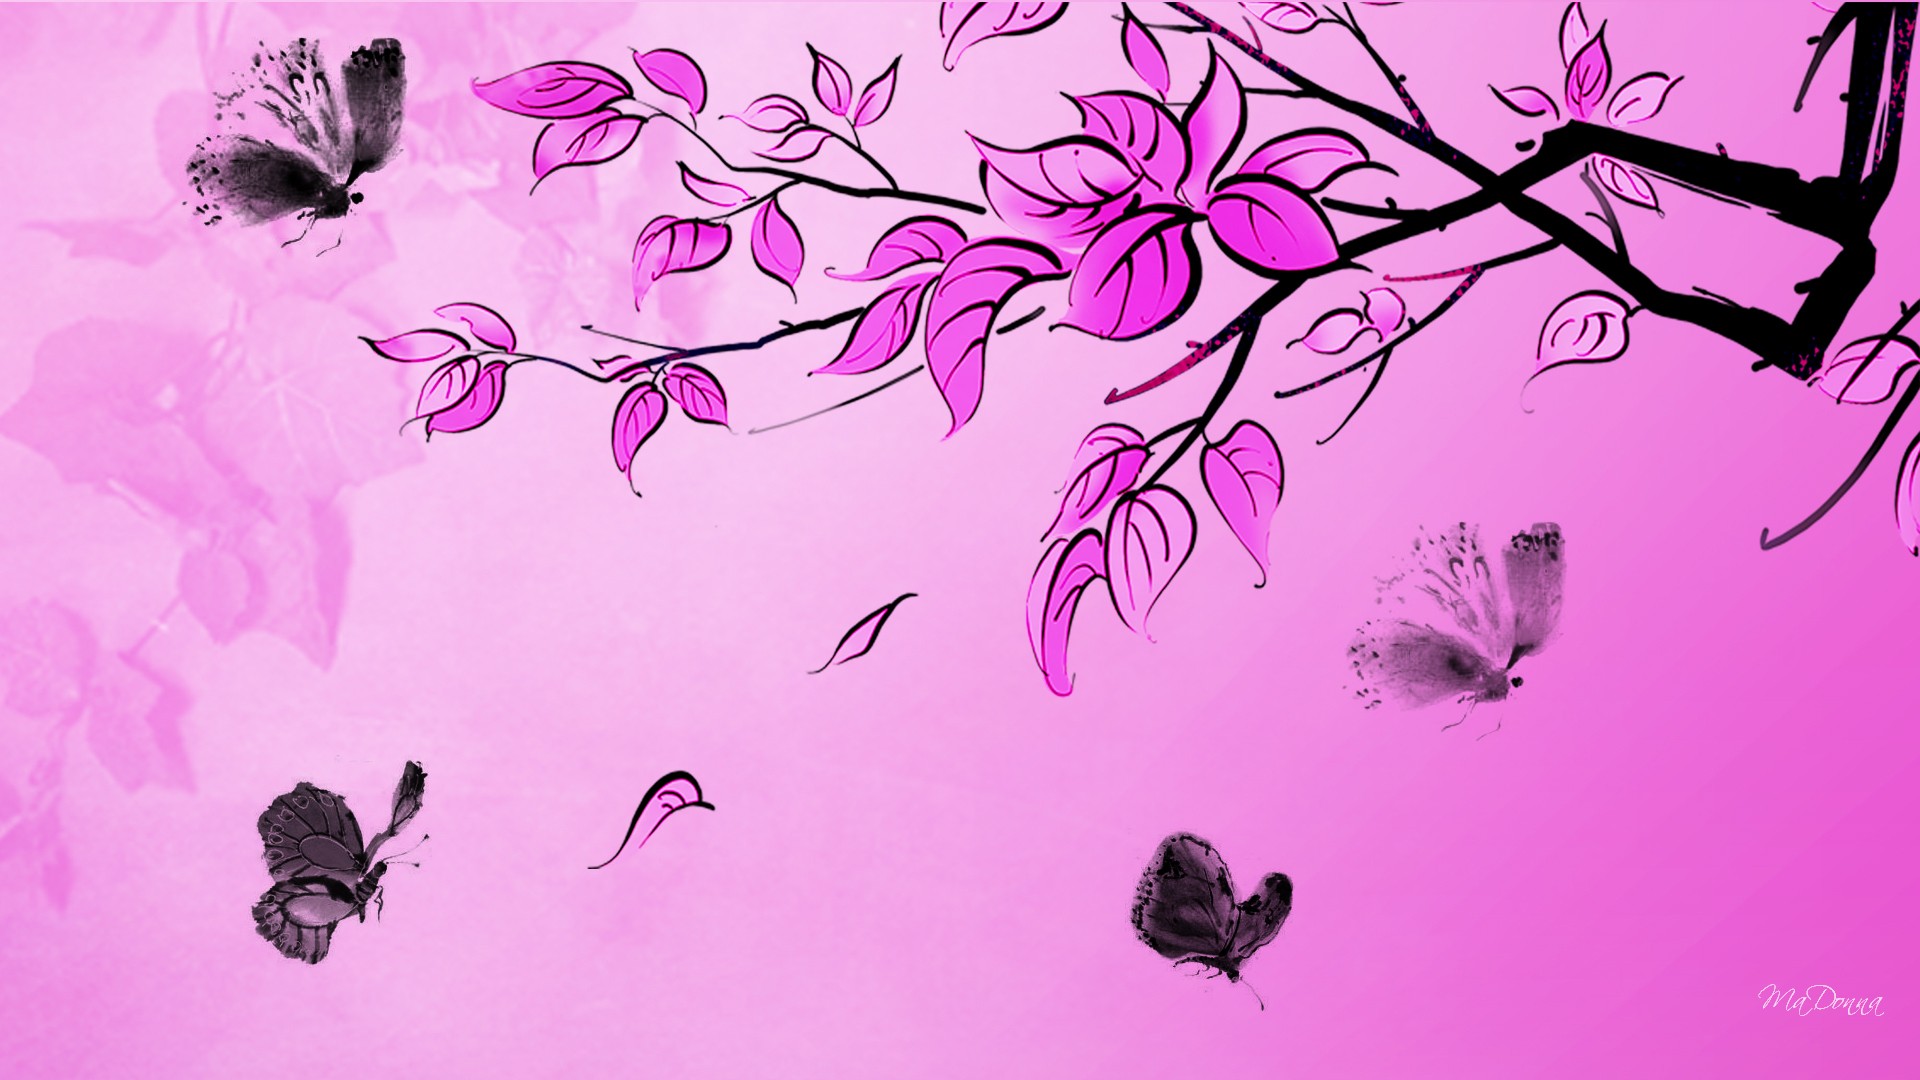 Pink with Black Butterflies wallpaper   ForWallpapercom